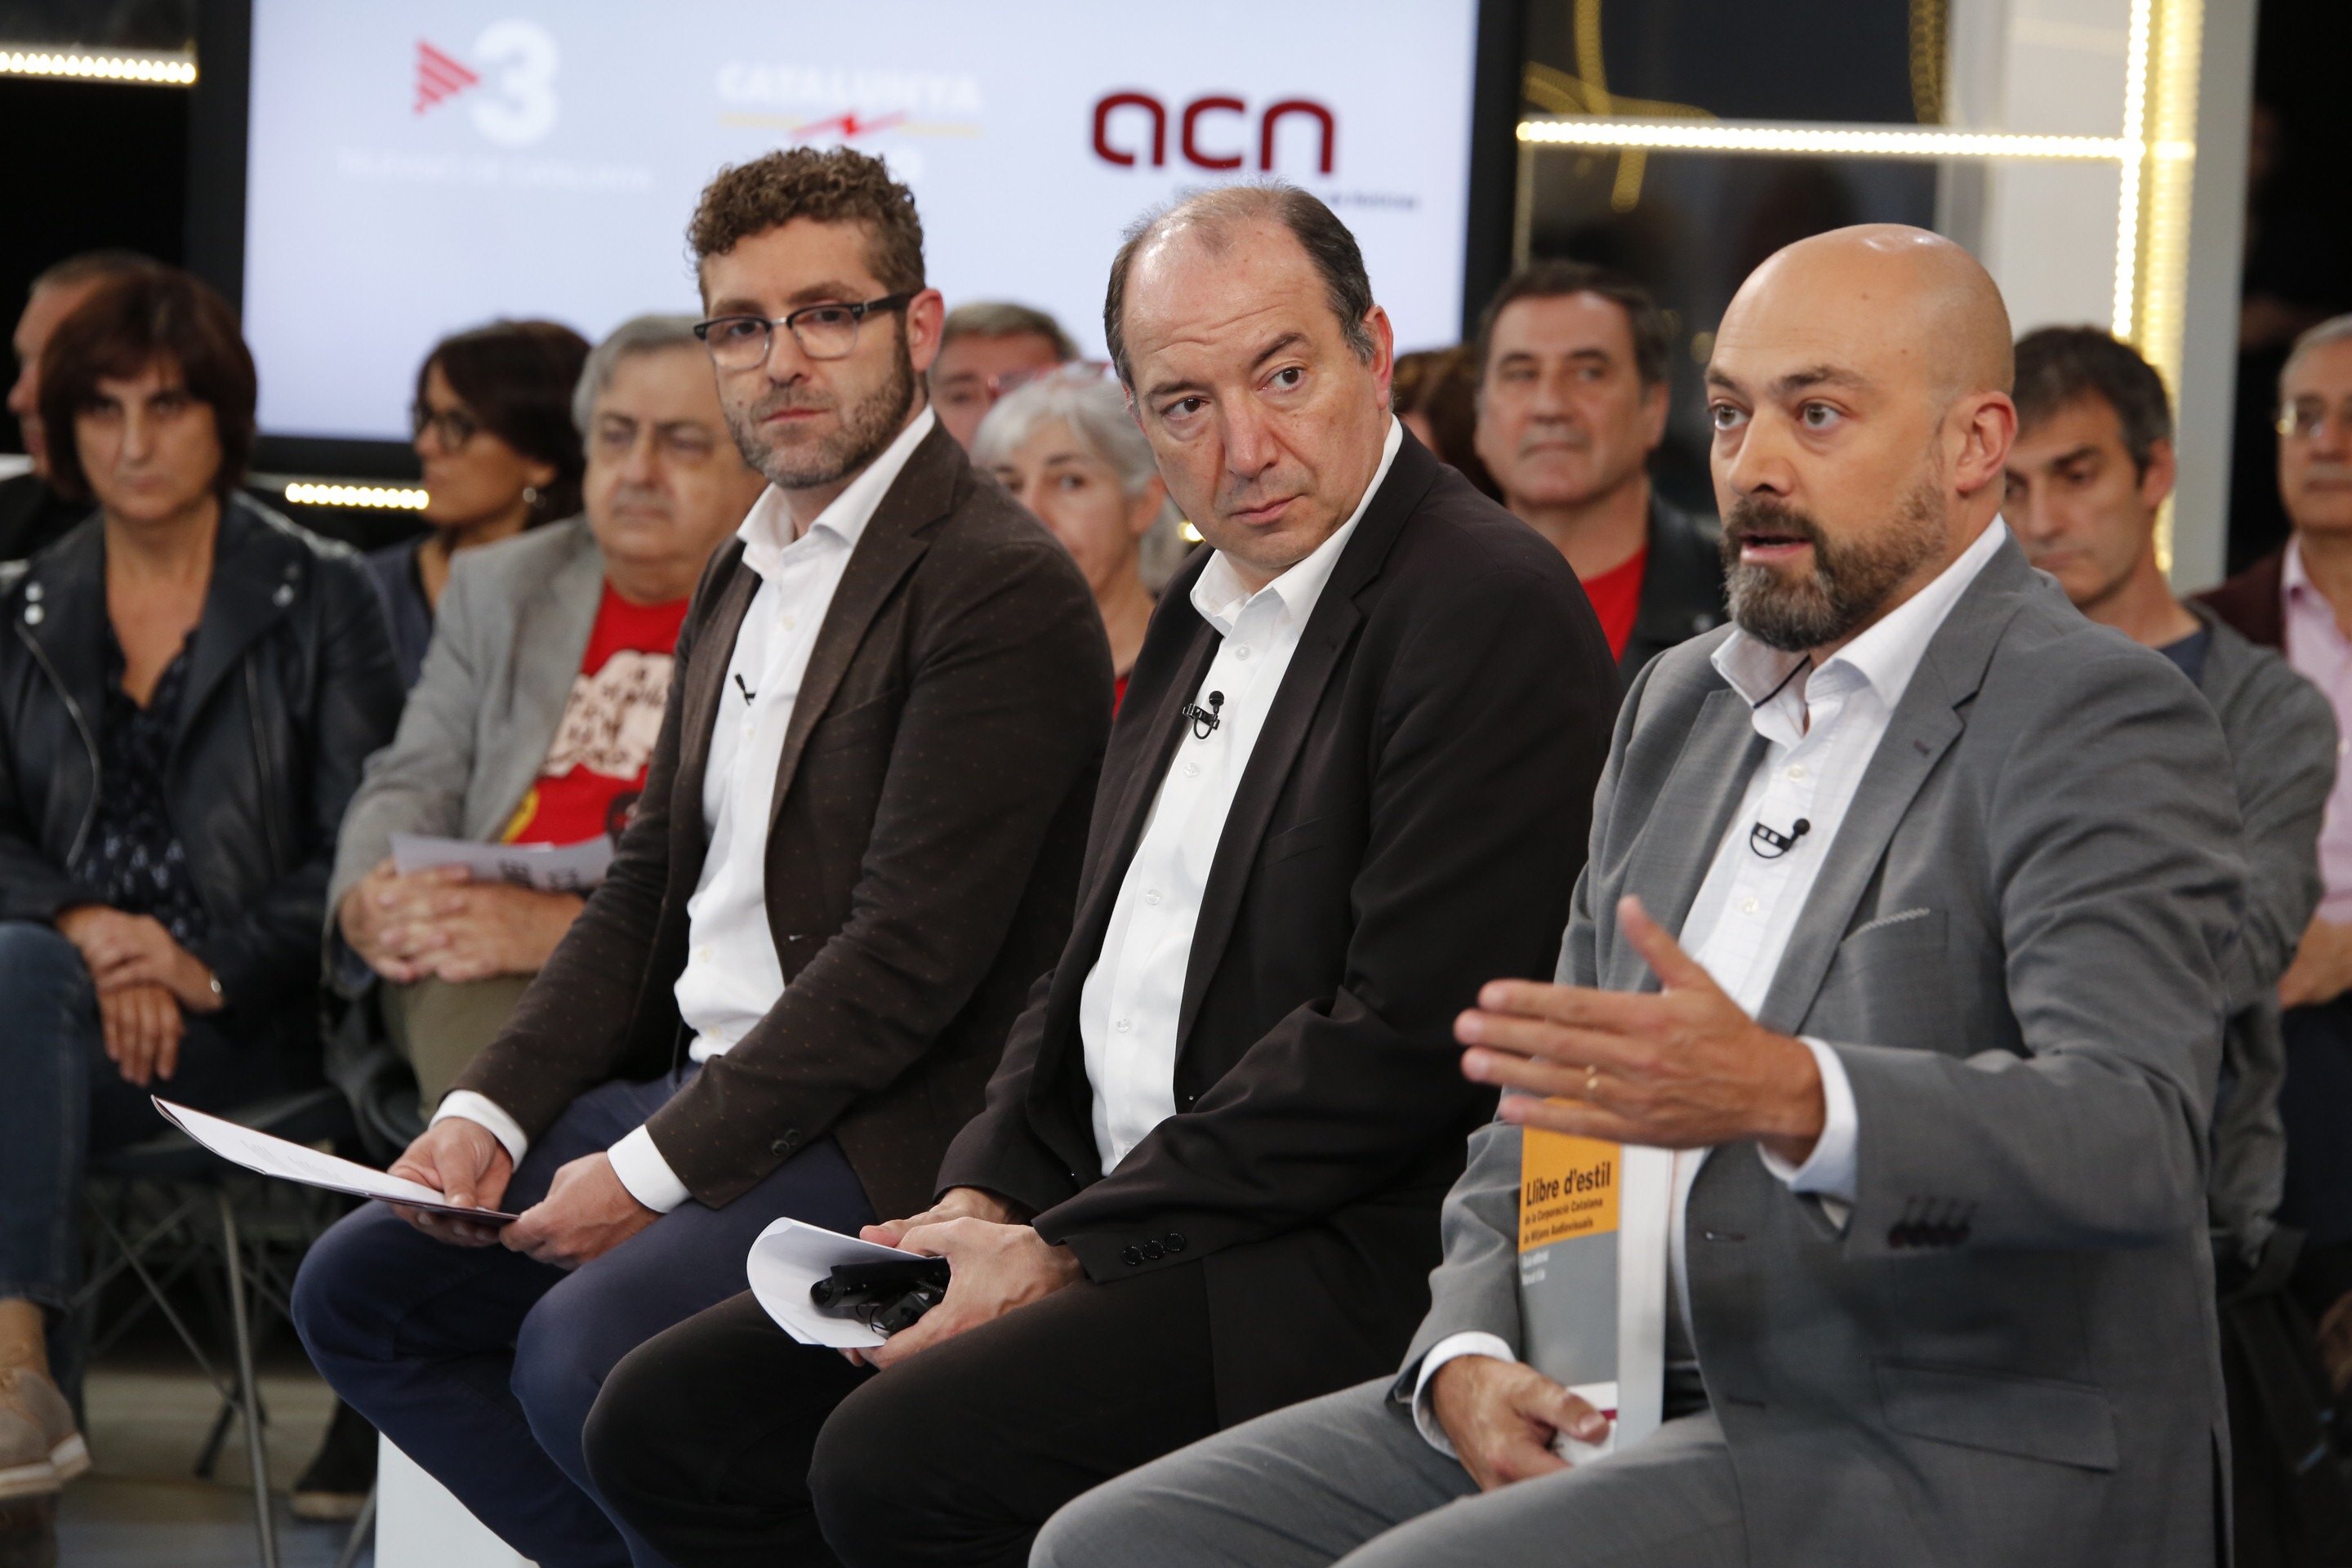 Citan a declarar por el 1-O a los directores de TV3 y Catalunya Ràdio el 1 de marzo